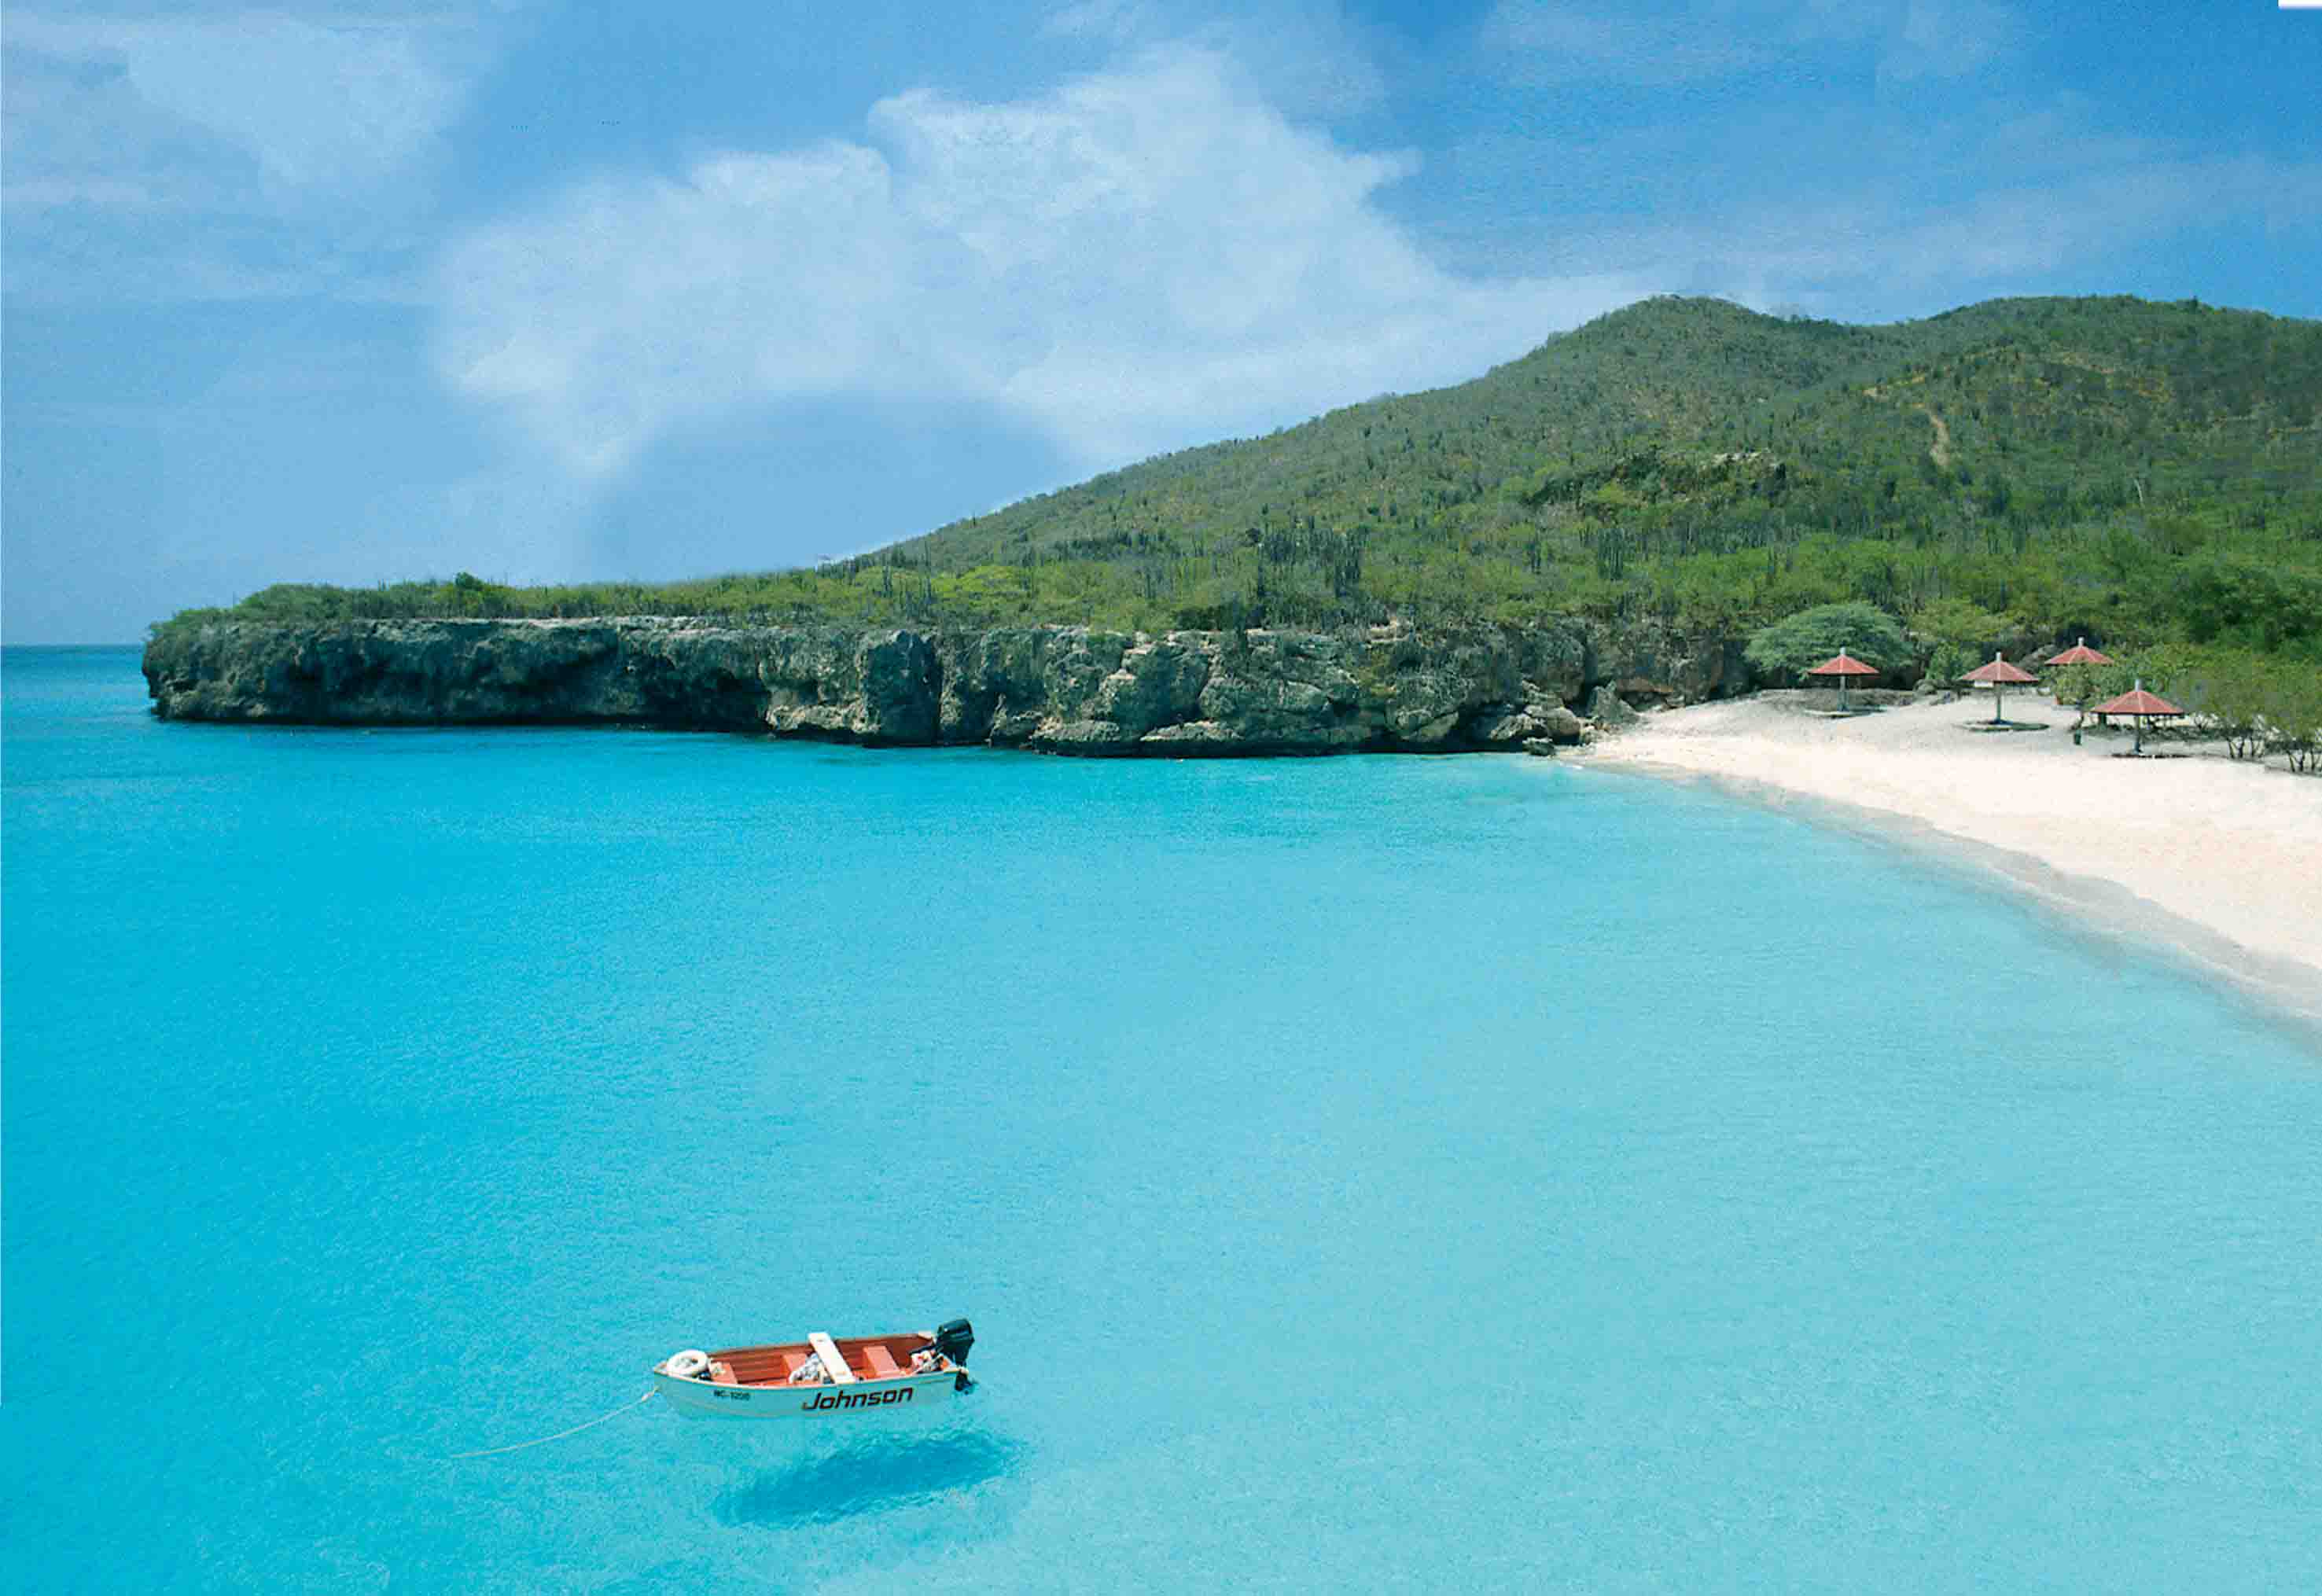 Qué ver en el Caribe - Turismo.org